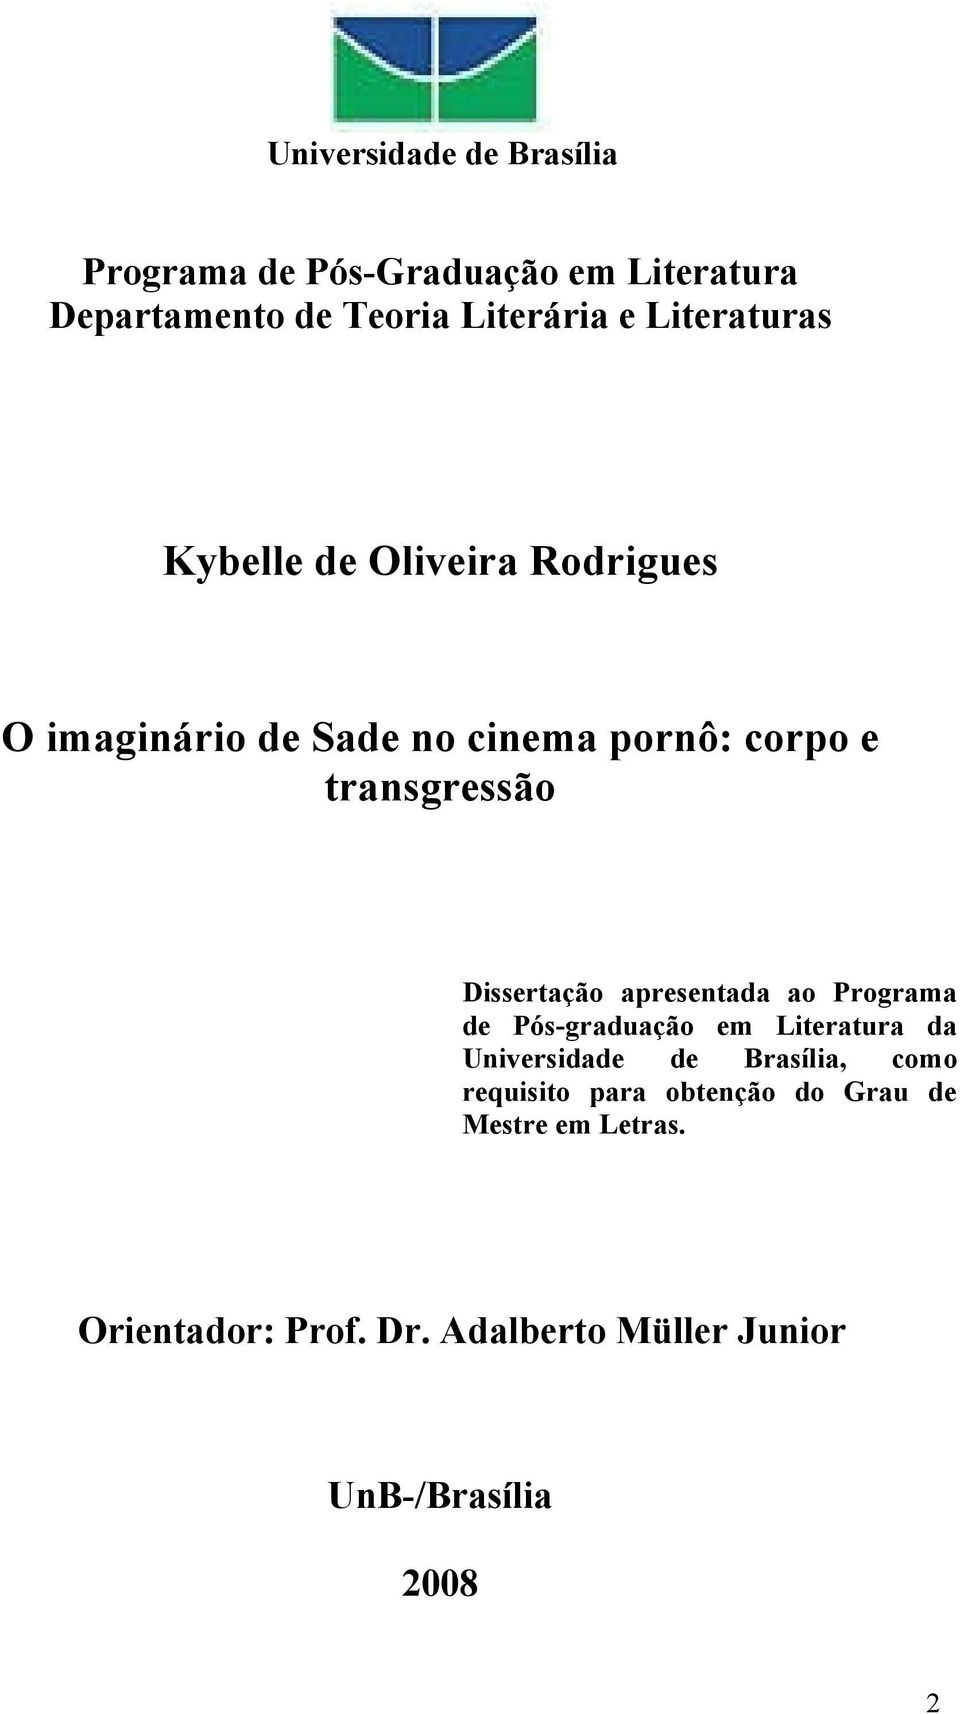 Dissertação apresentada ao Programa de Pós-graduação em Literatura da Universidade de Brasília, como